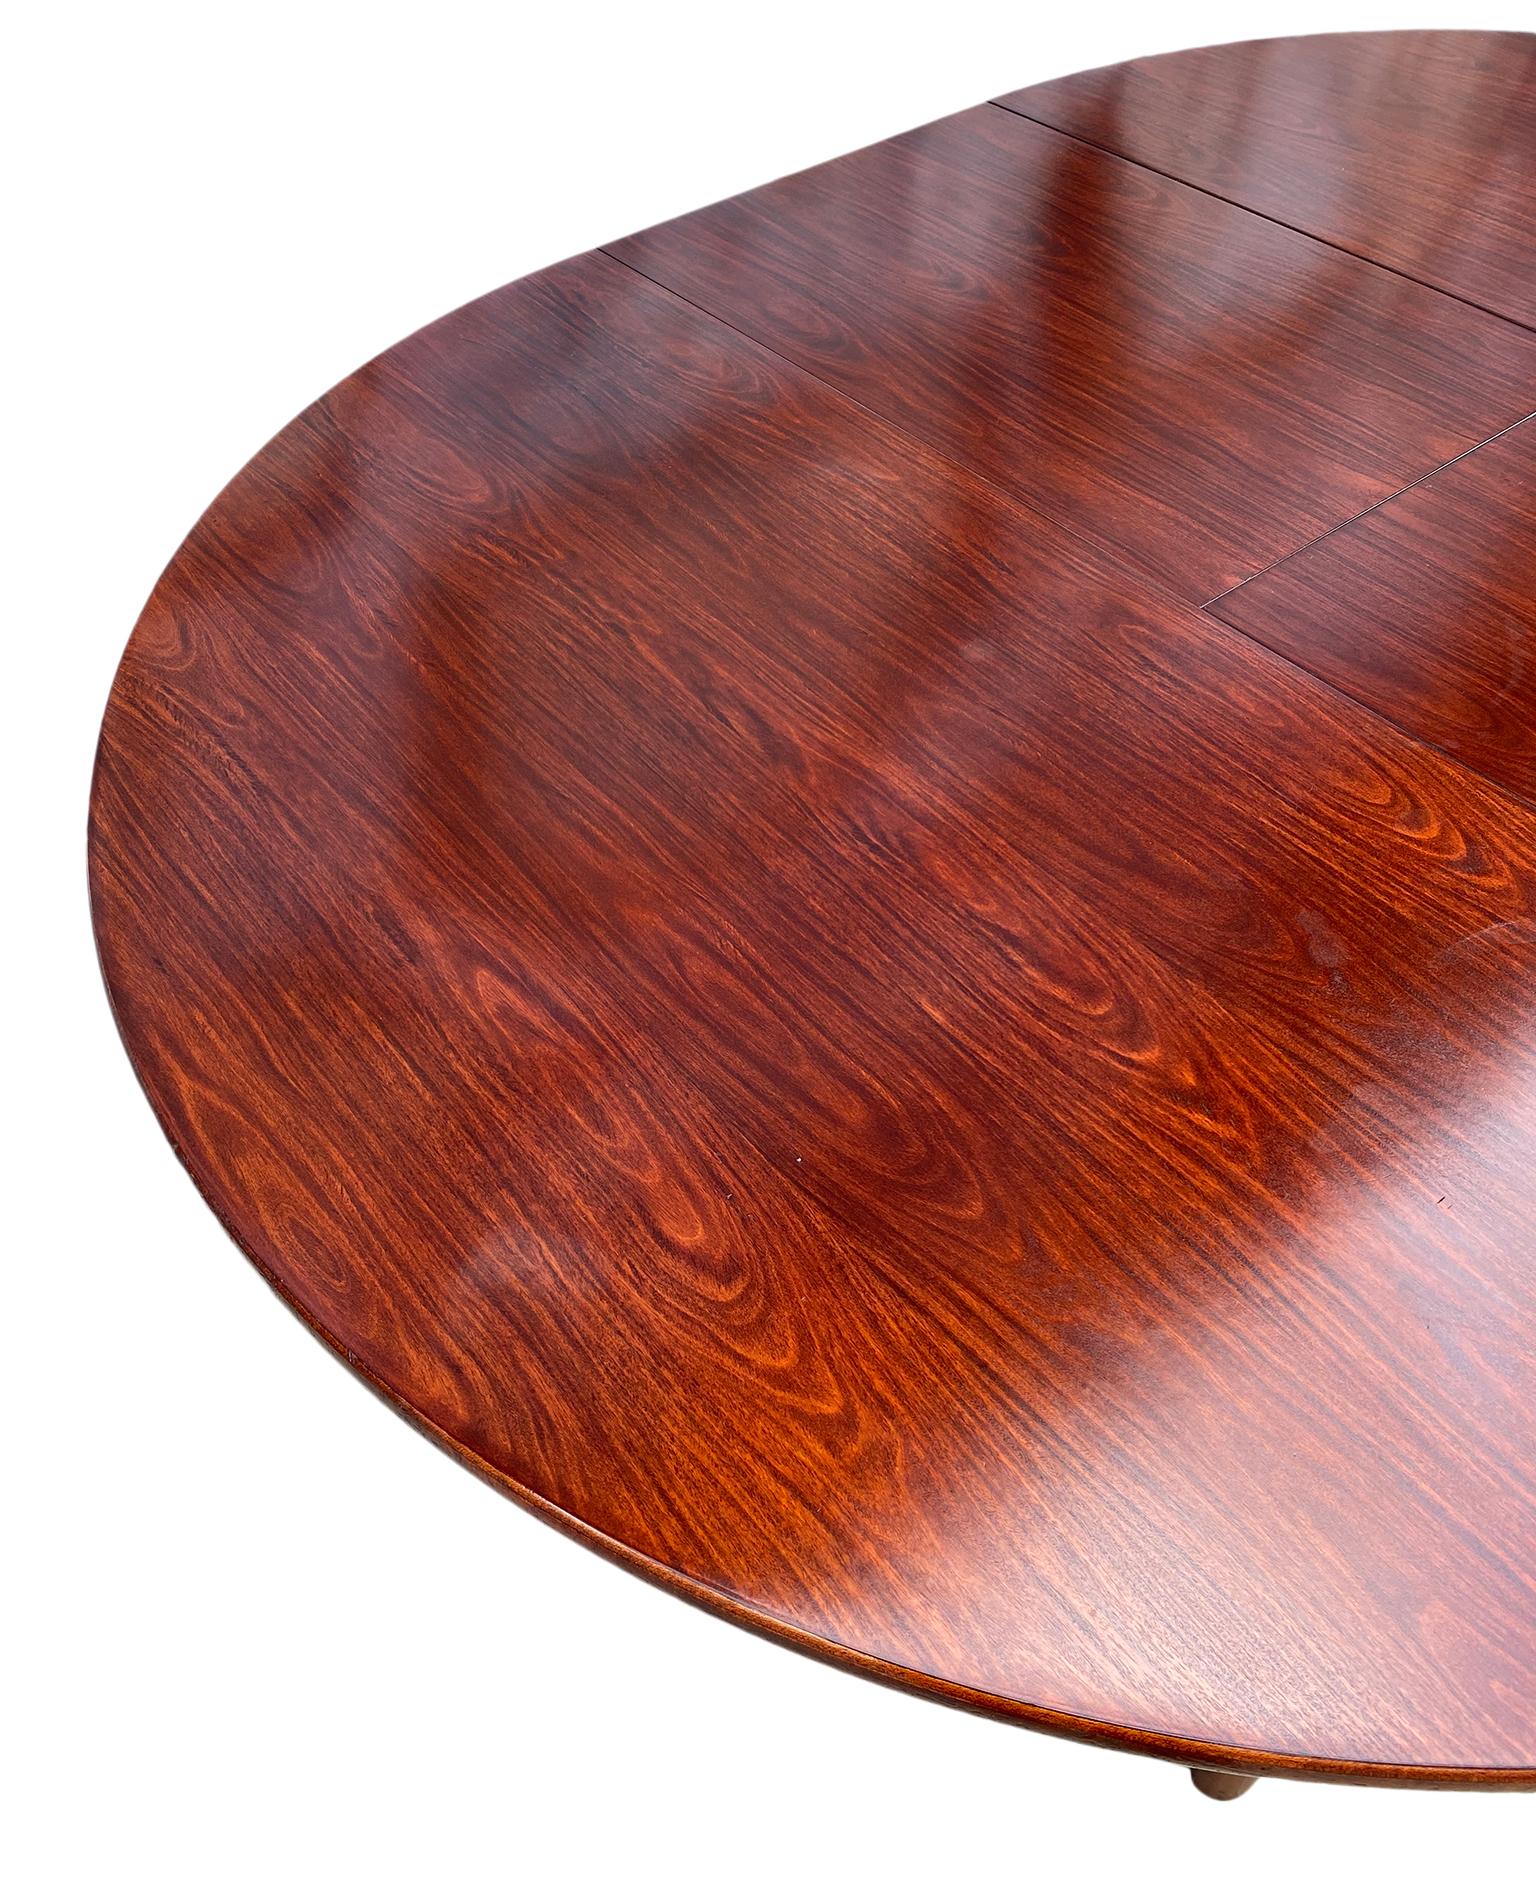 Midcentury Rosewood Expandable Round Dining Table with 1 Nesting Leaf (Rosenholz)